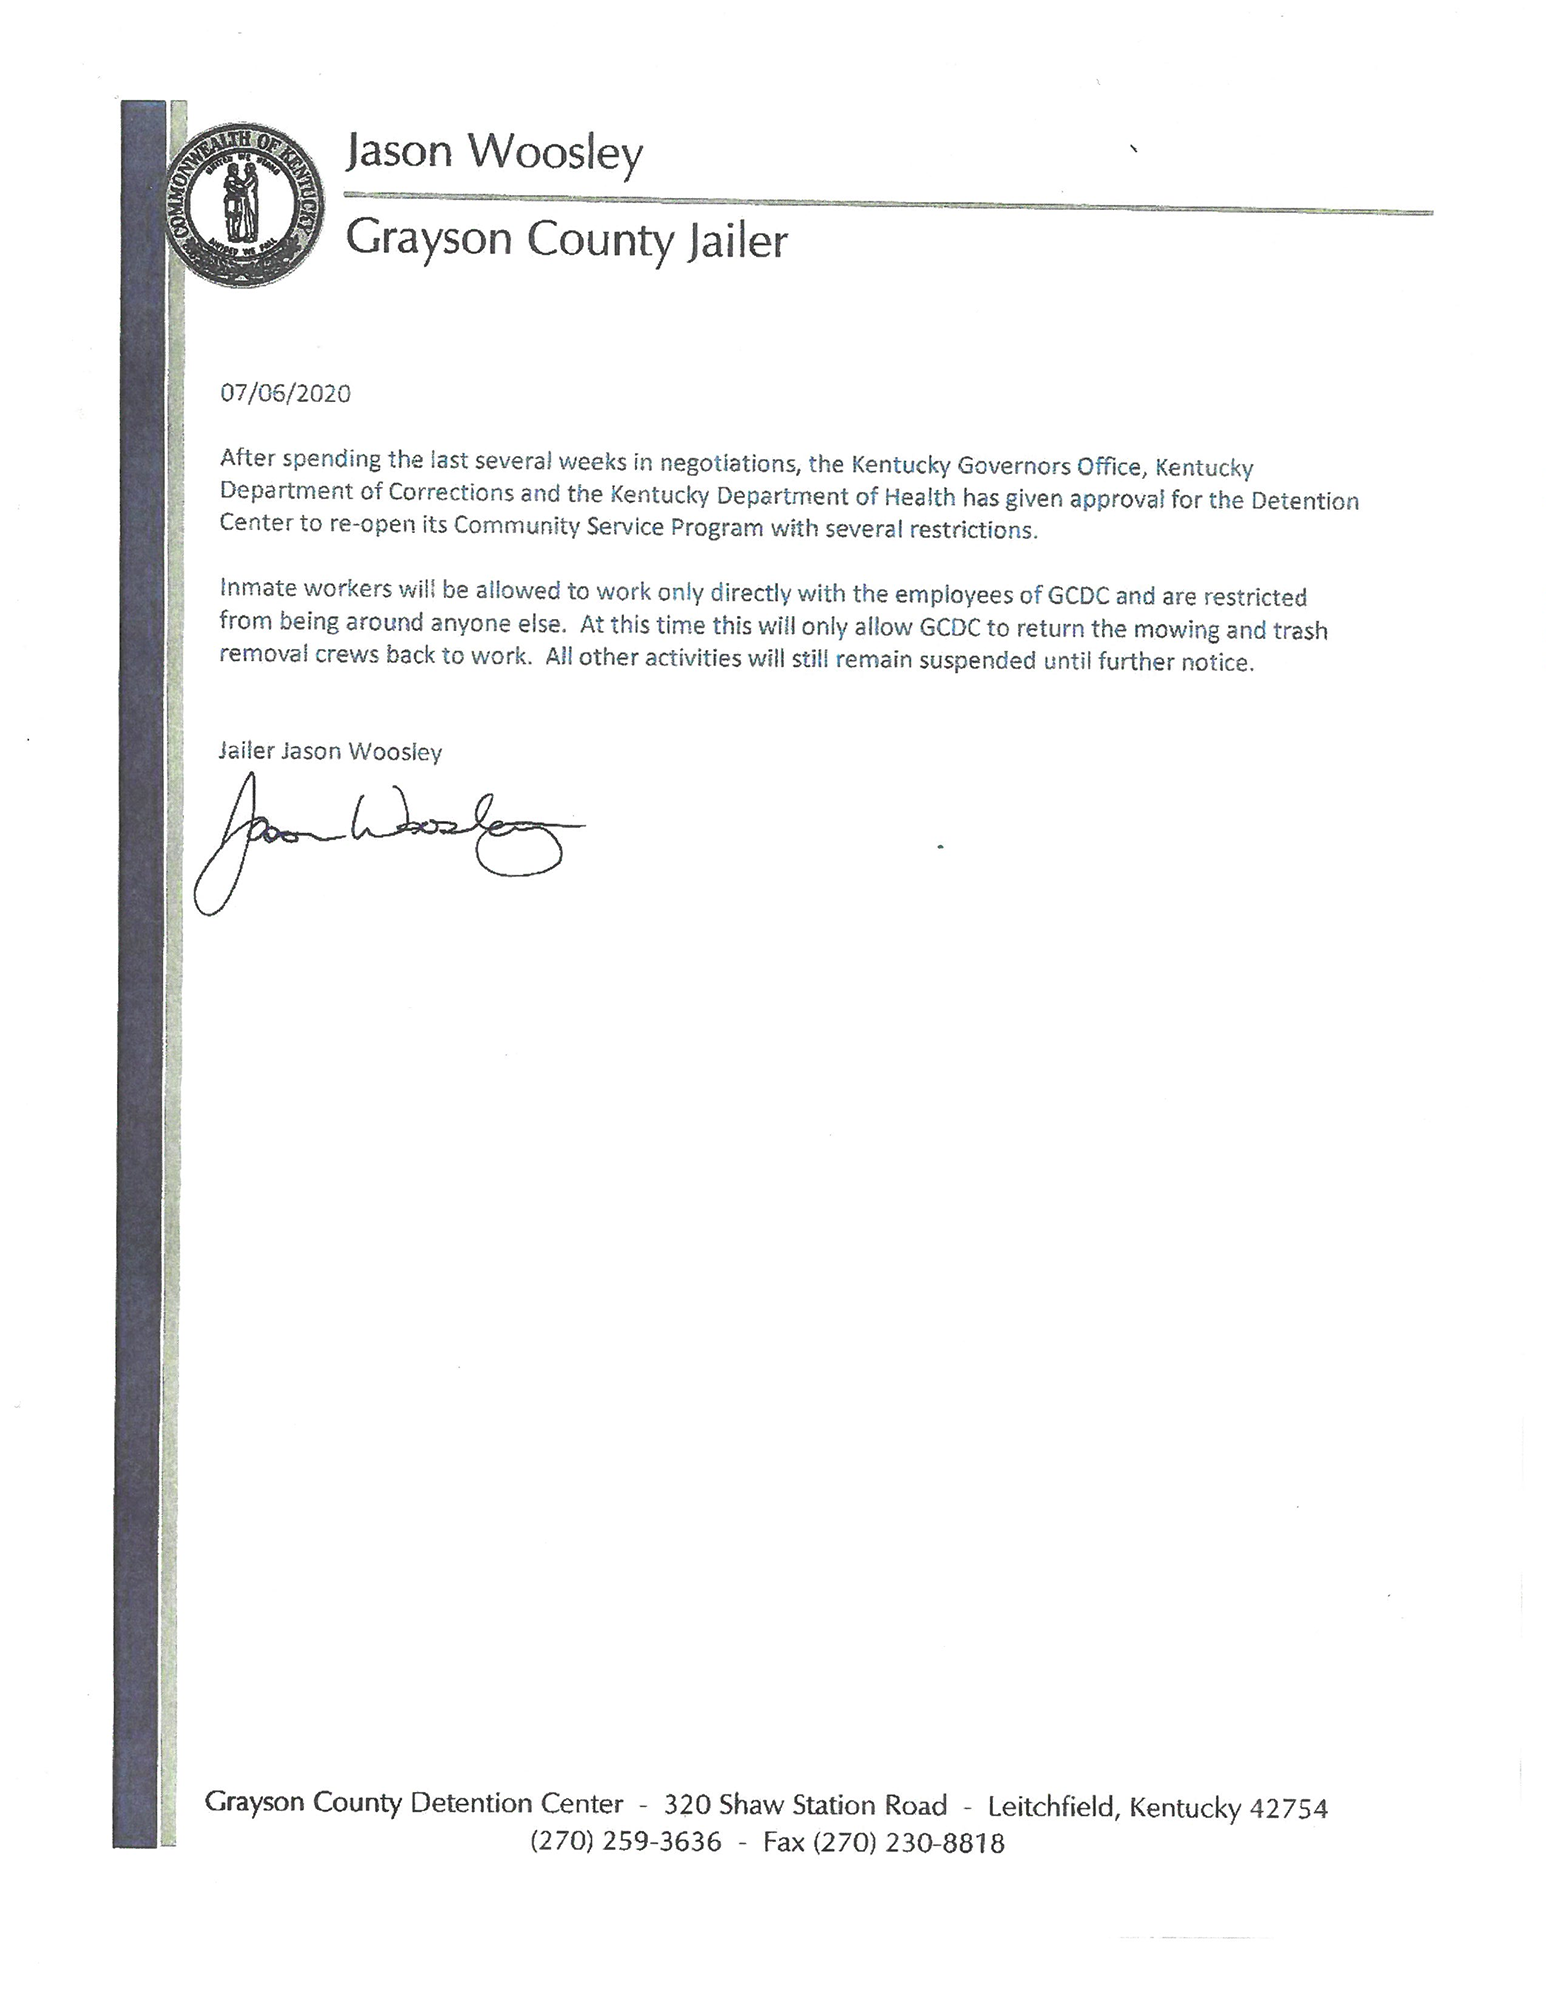 Grayson County Jailer's Announcement Letter